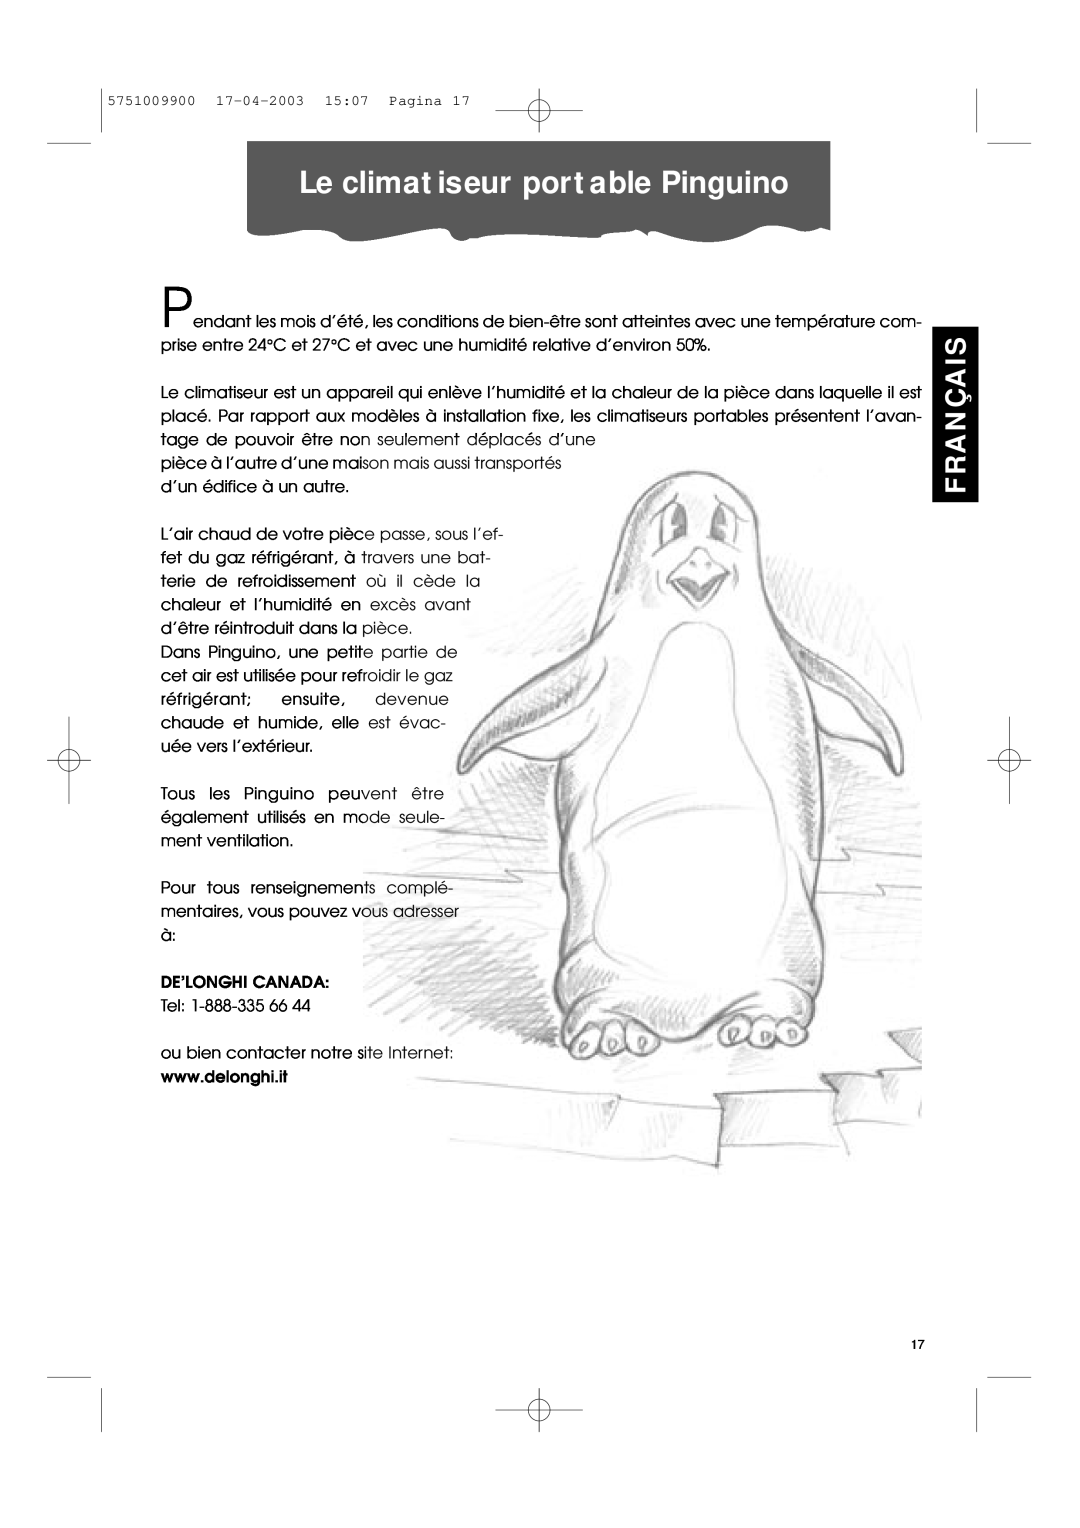 DeLonghi Pac 1000 manual Le climatiseur portable Pinguino, Français 